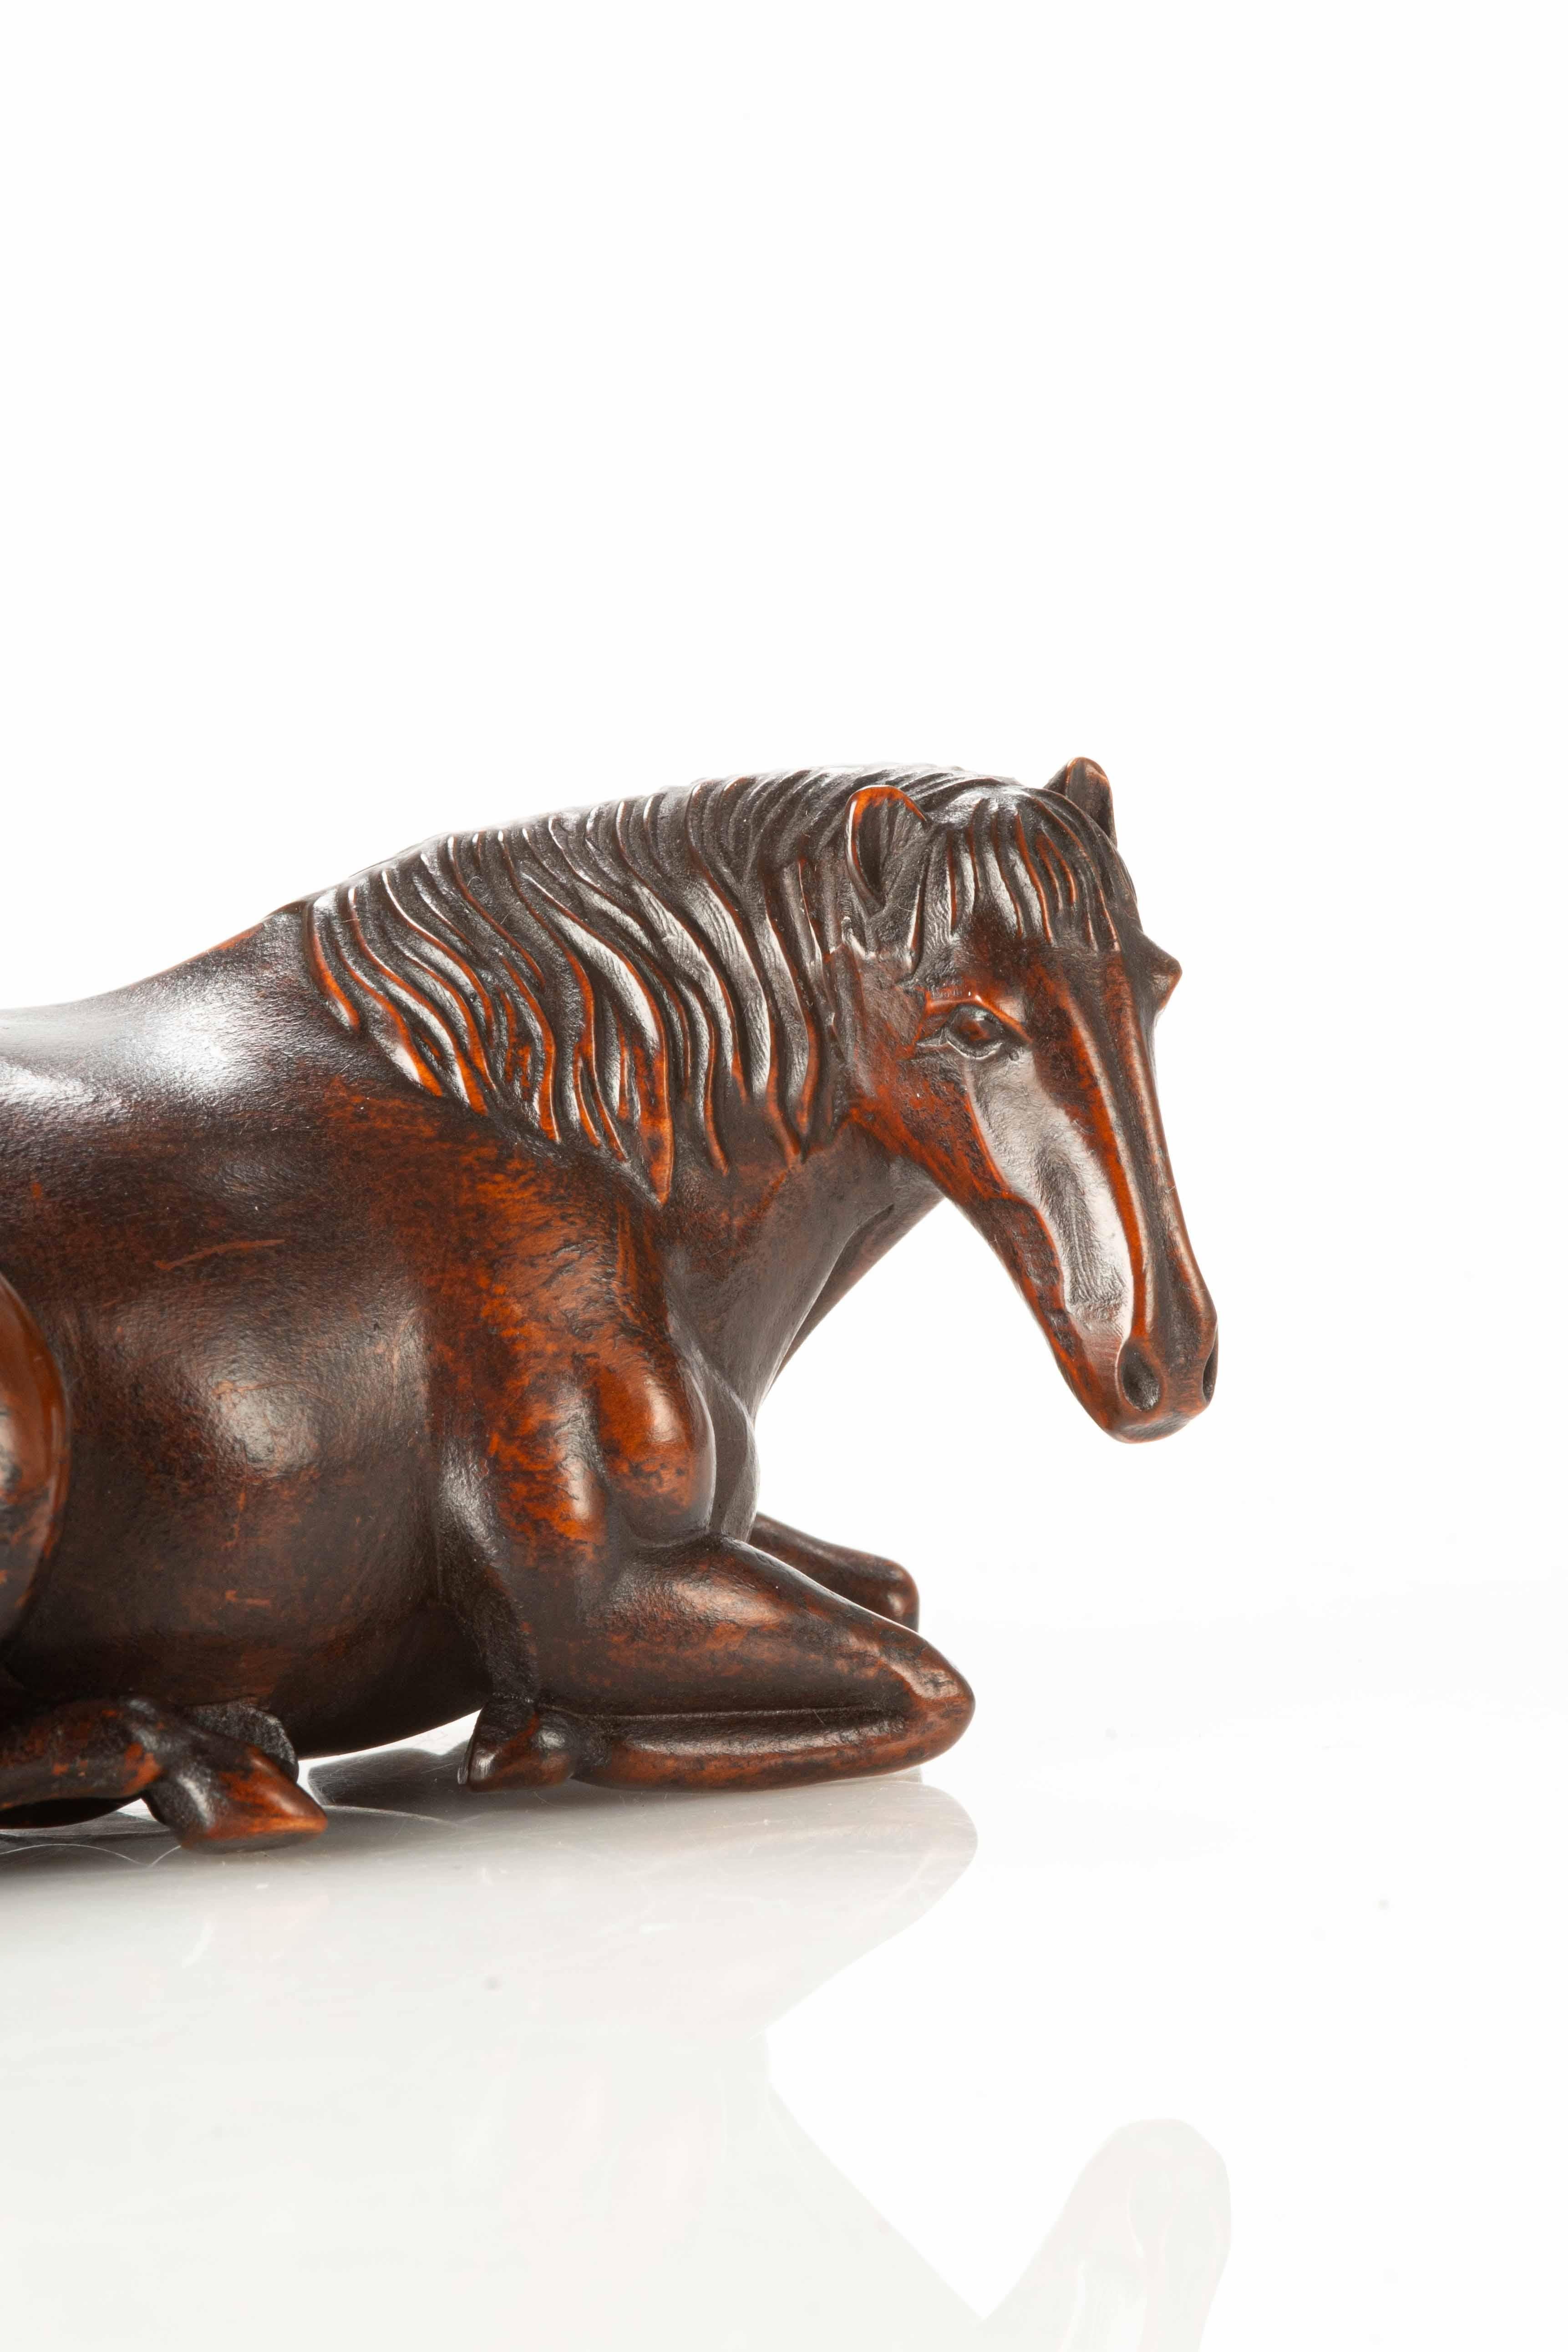 Okimono en bois représentant un cheval couché, finement sculpté dans les moindres détails. Les muscles, les sabots et la crinière sont rendus avec soin et art, capturant la vitalité du cheval dans une forme statique.

L'excellente patine qui